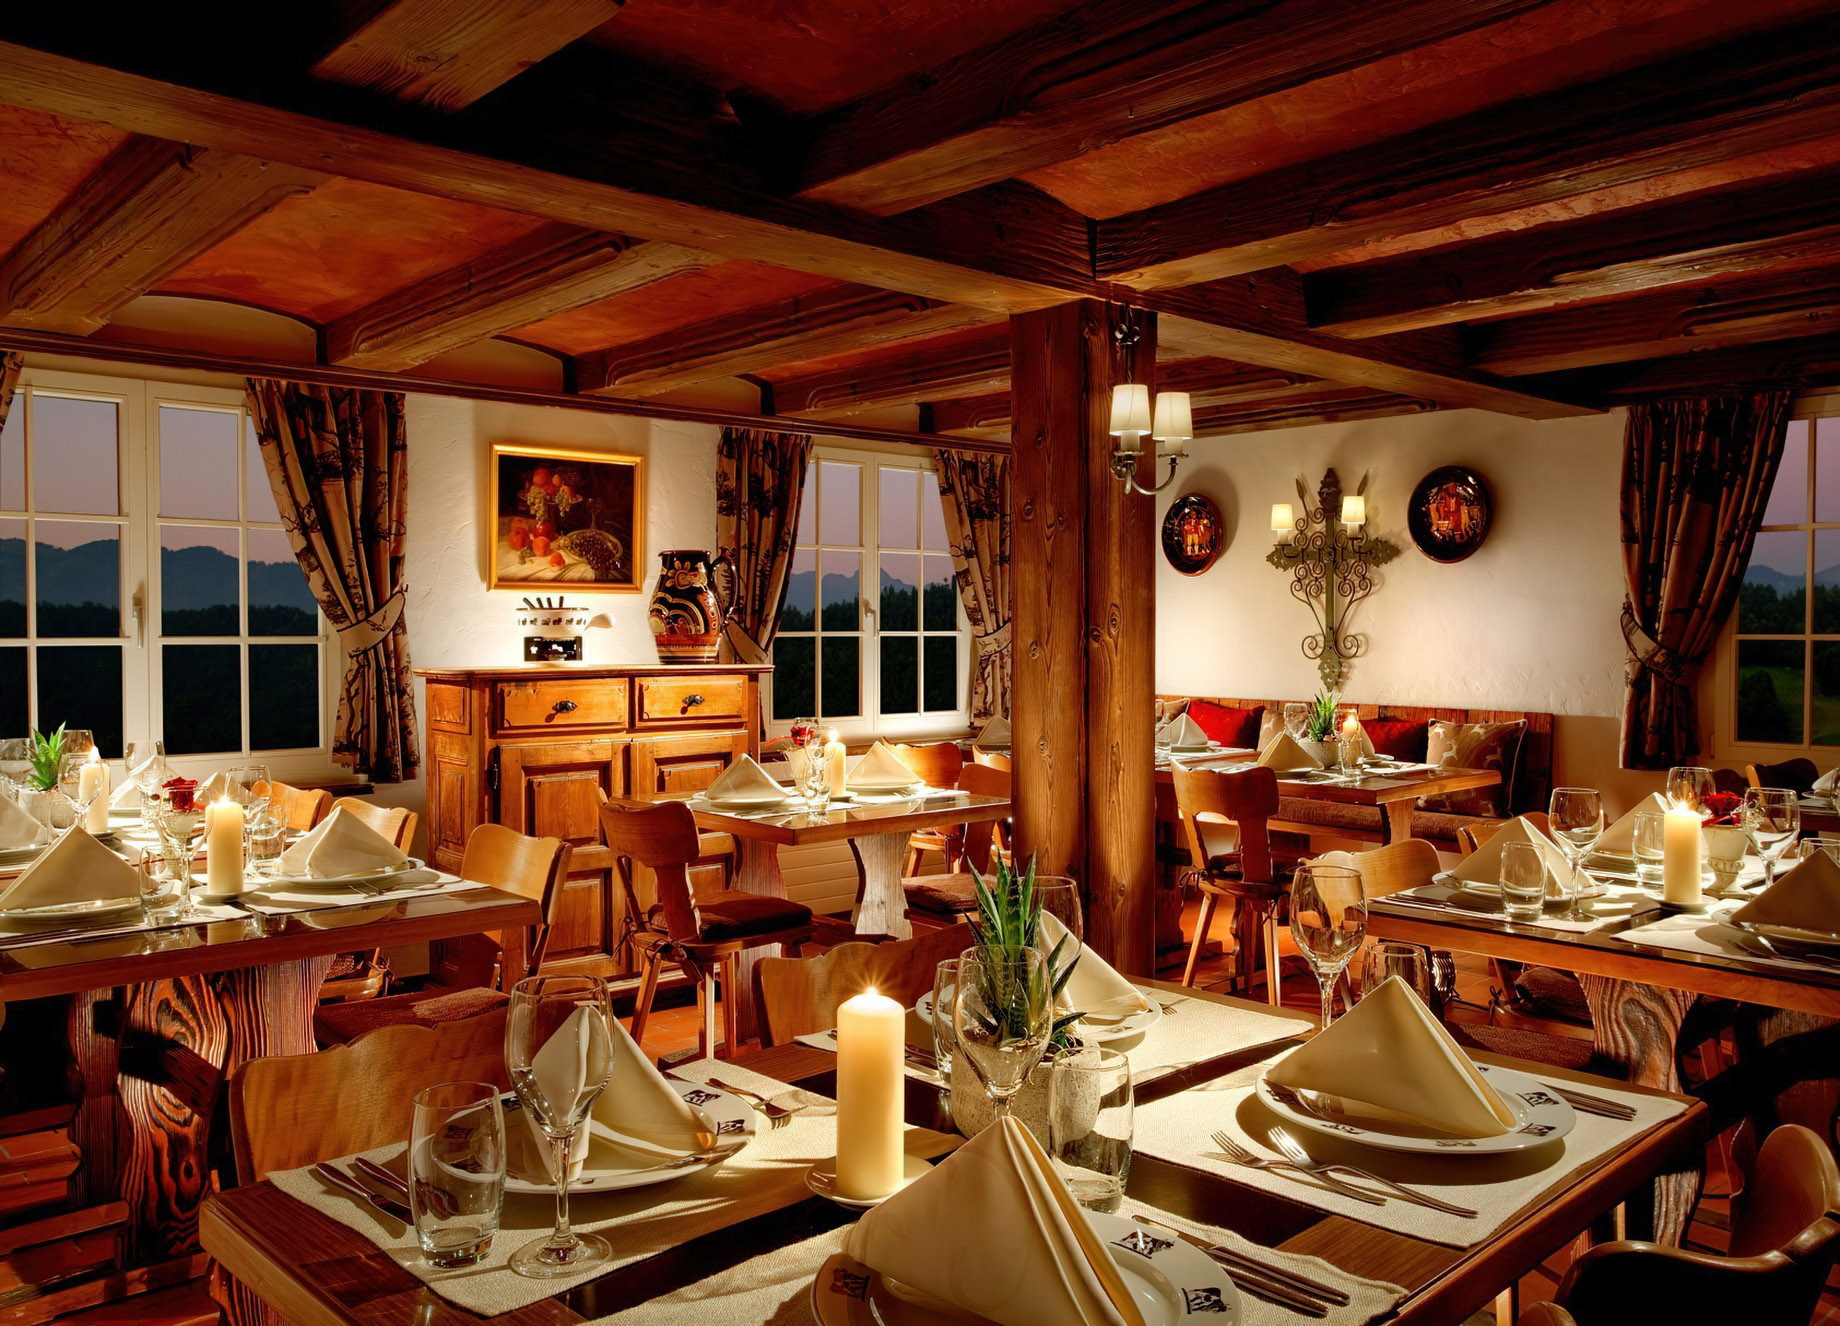 Taverne 1879 - Burgenstock Hotels & Resort - Obburgen, Switzerland - Dining Room